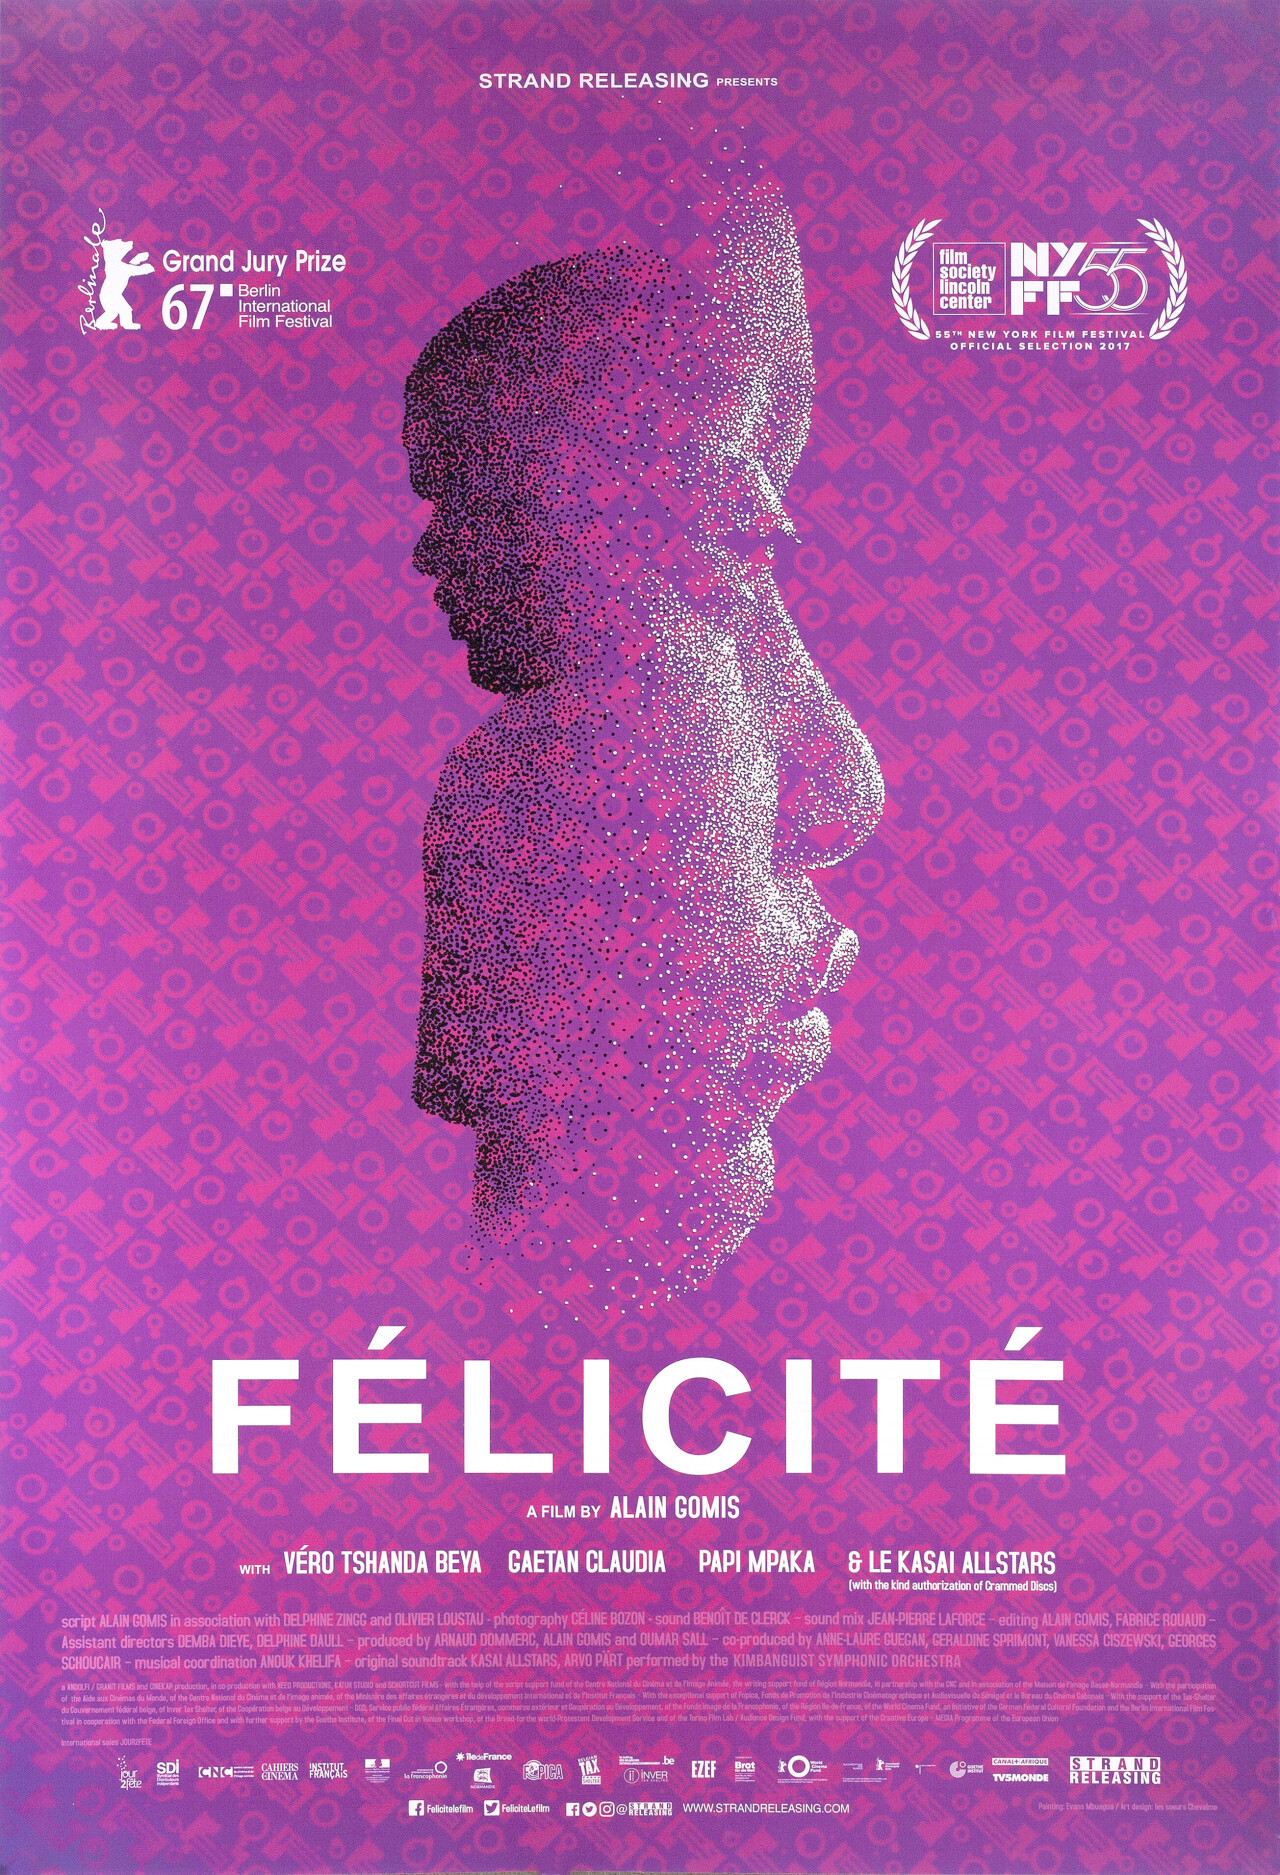 Счастье (Felicite, 2017), режиссёр Ален Гомис, американский постер к фильму (графический дизайн, 2017 год)